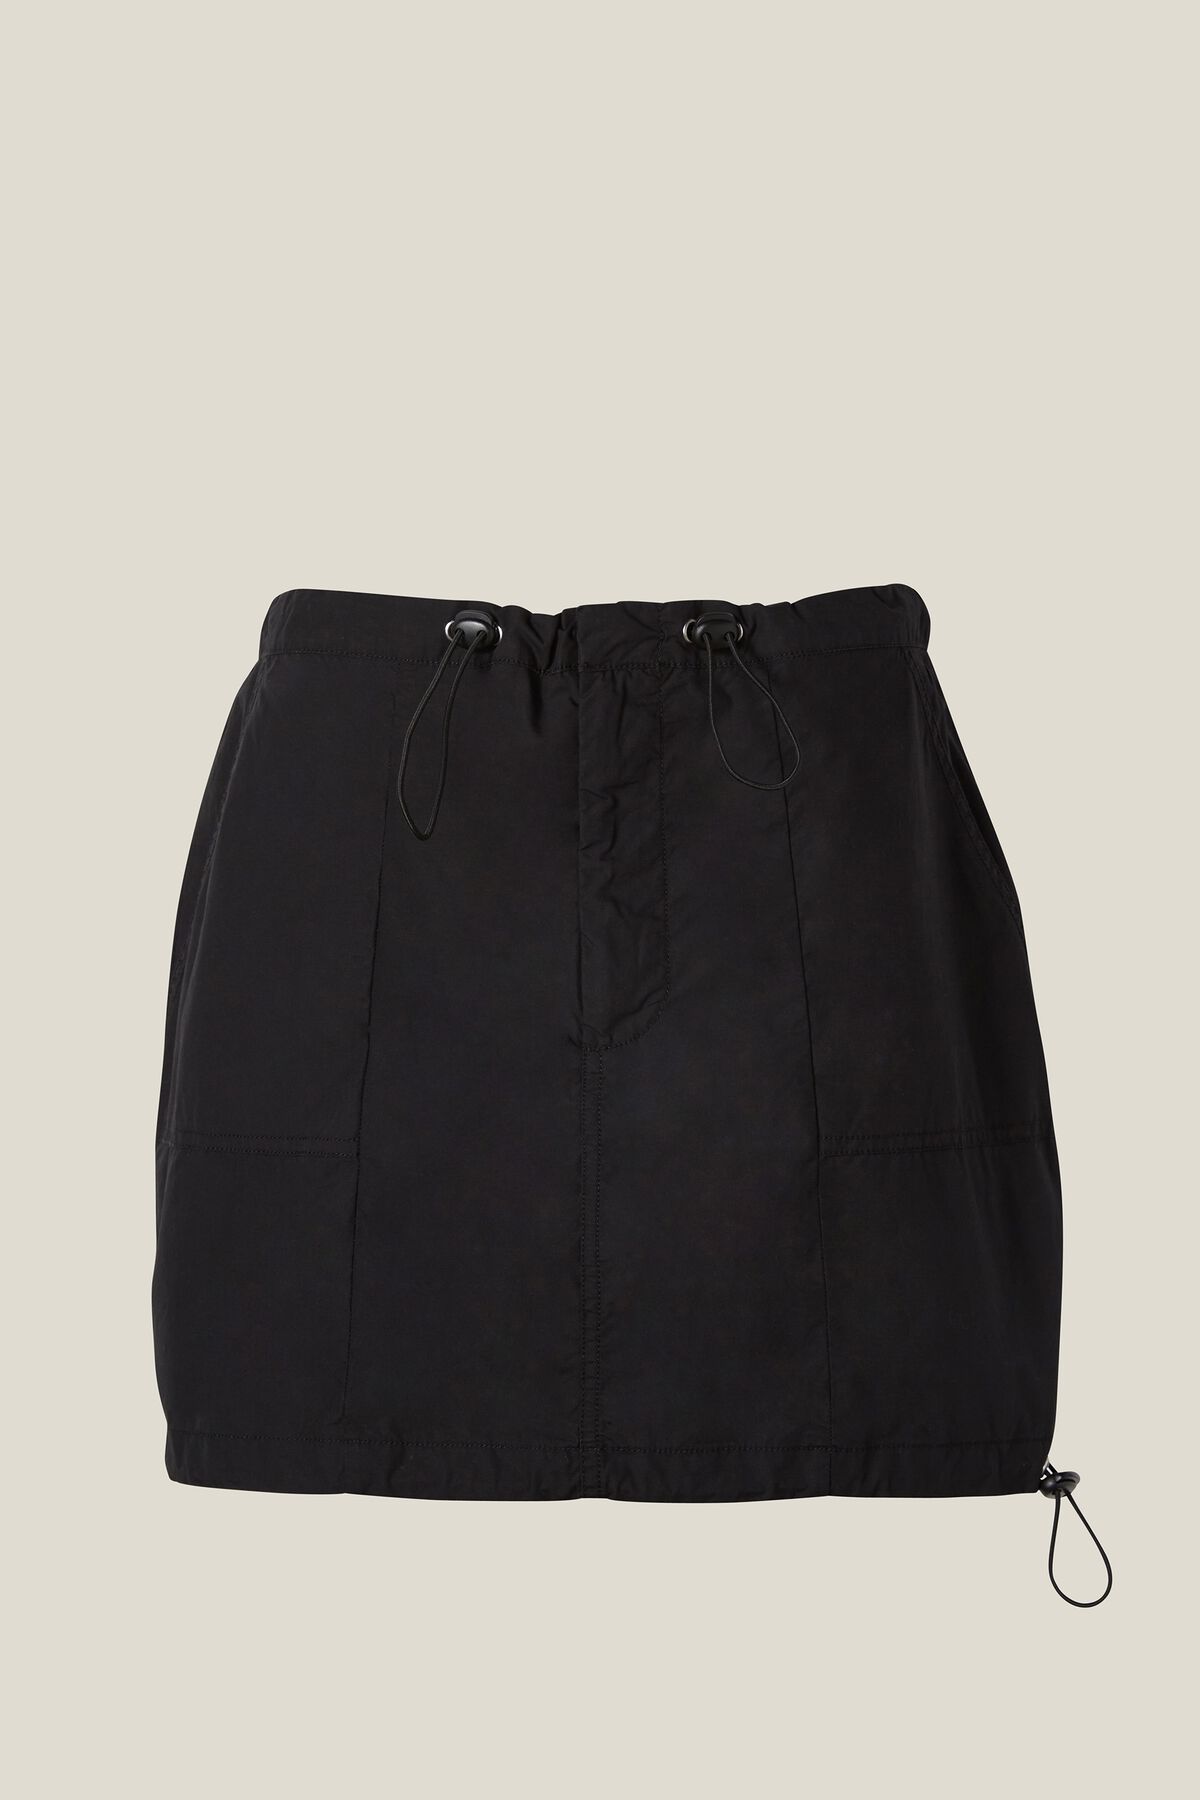 Jordan Cargo Mini Skirt